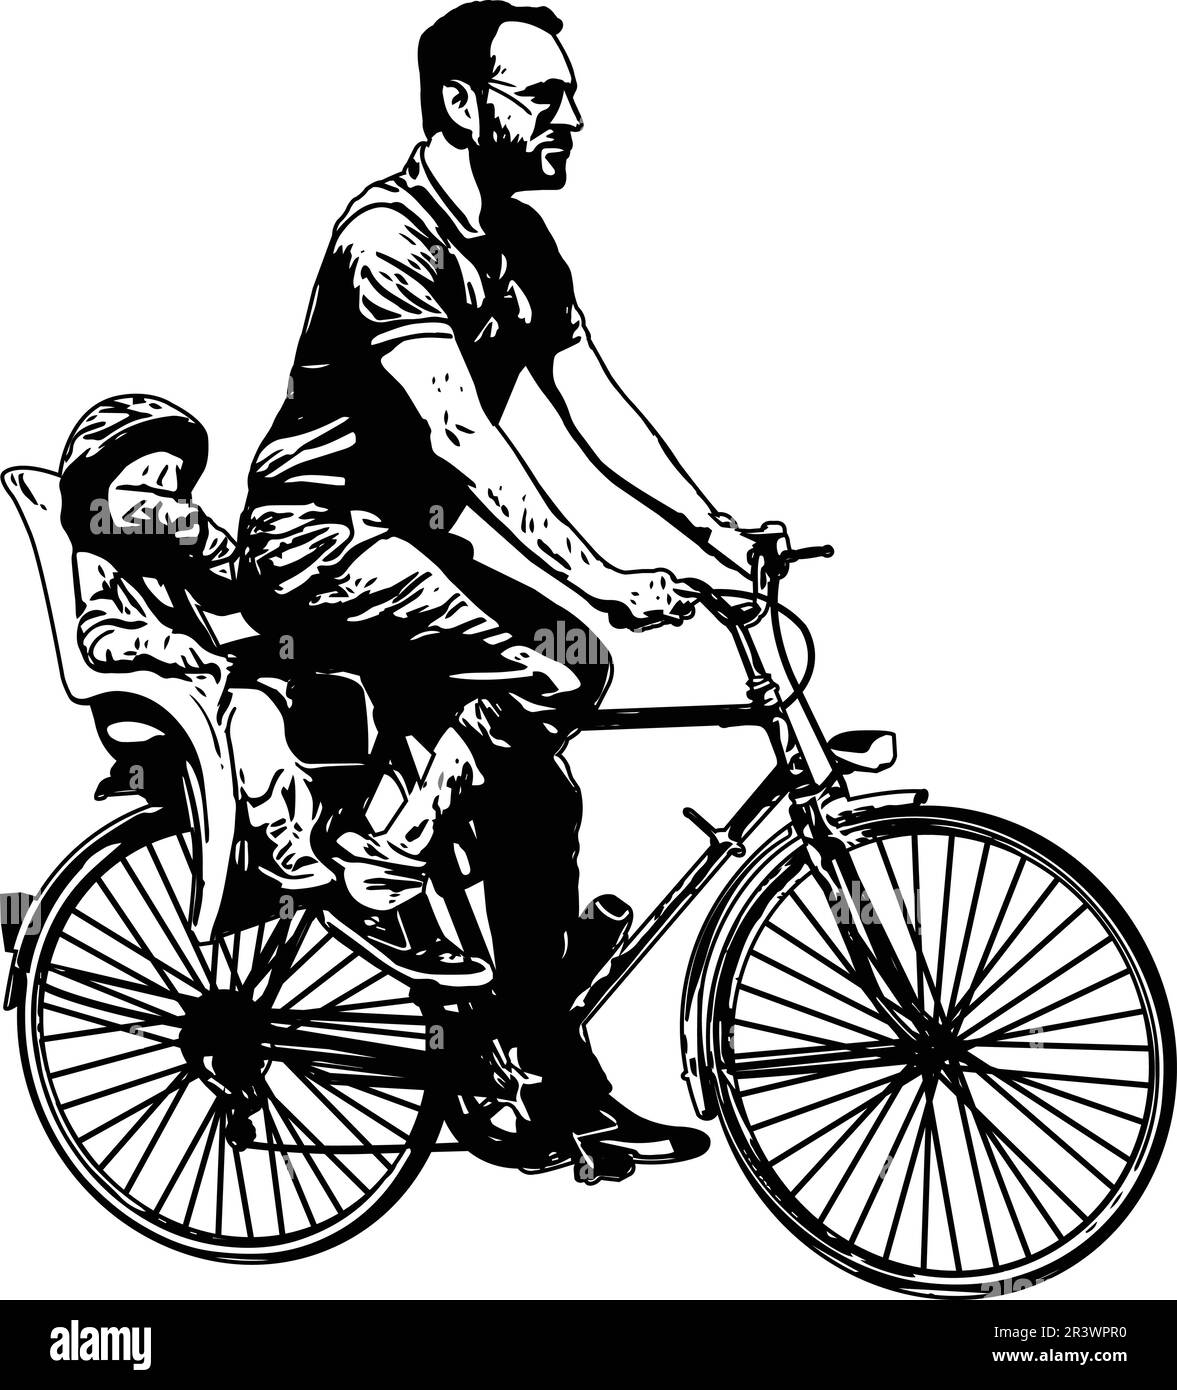 hombre montando bicicleta con bebé en silueta de boceto de asiento para niños - ilustraciones vectoriales Ilustración del Vector